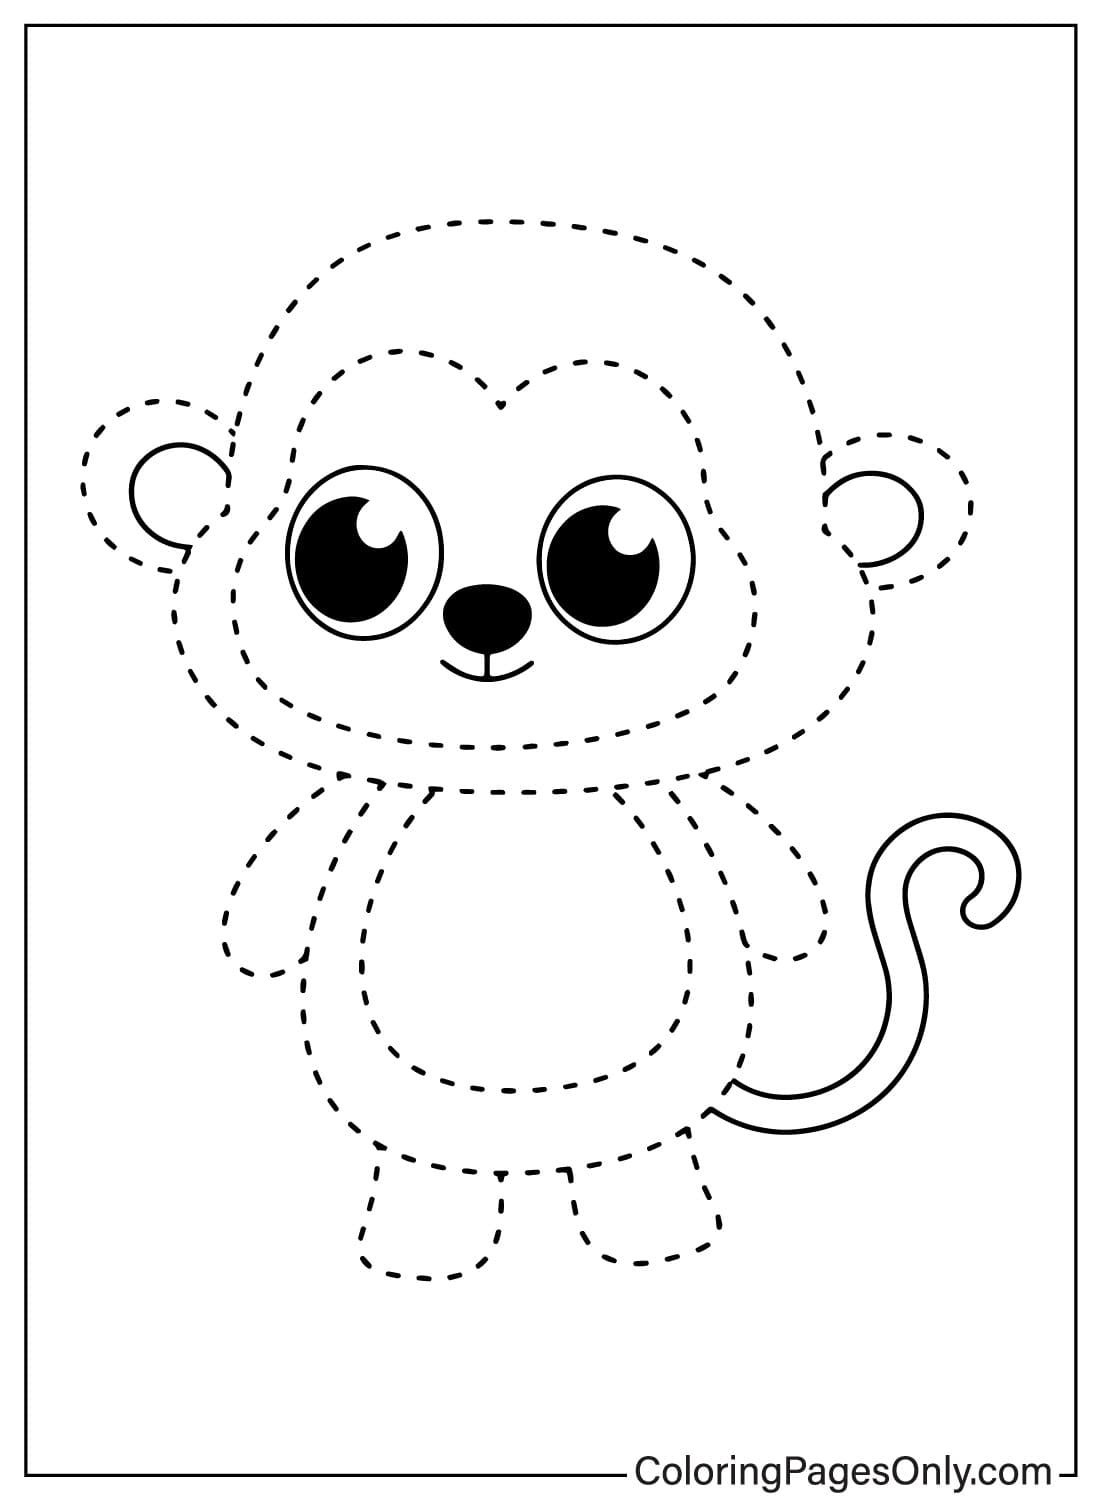 Tracciare la scimmia da colorare pagina da Tracing